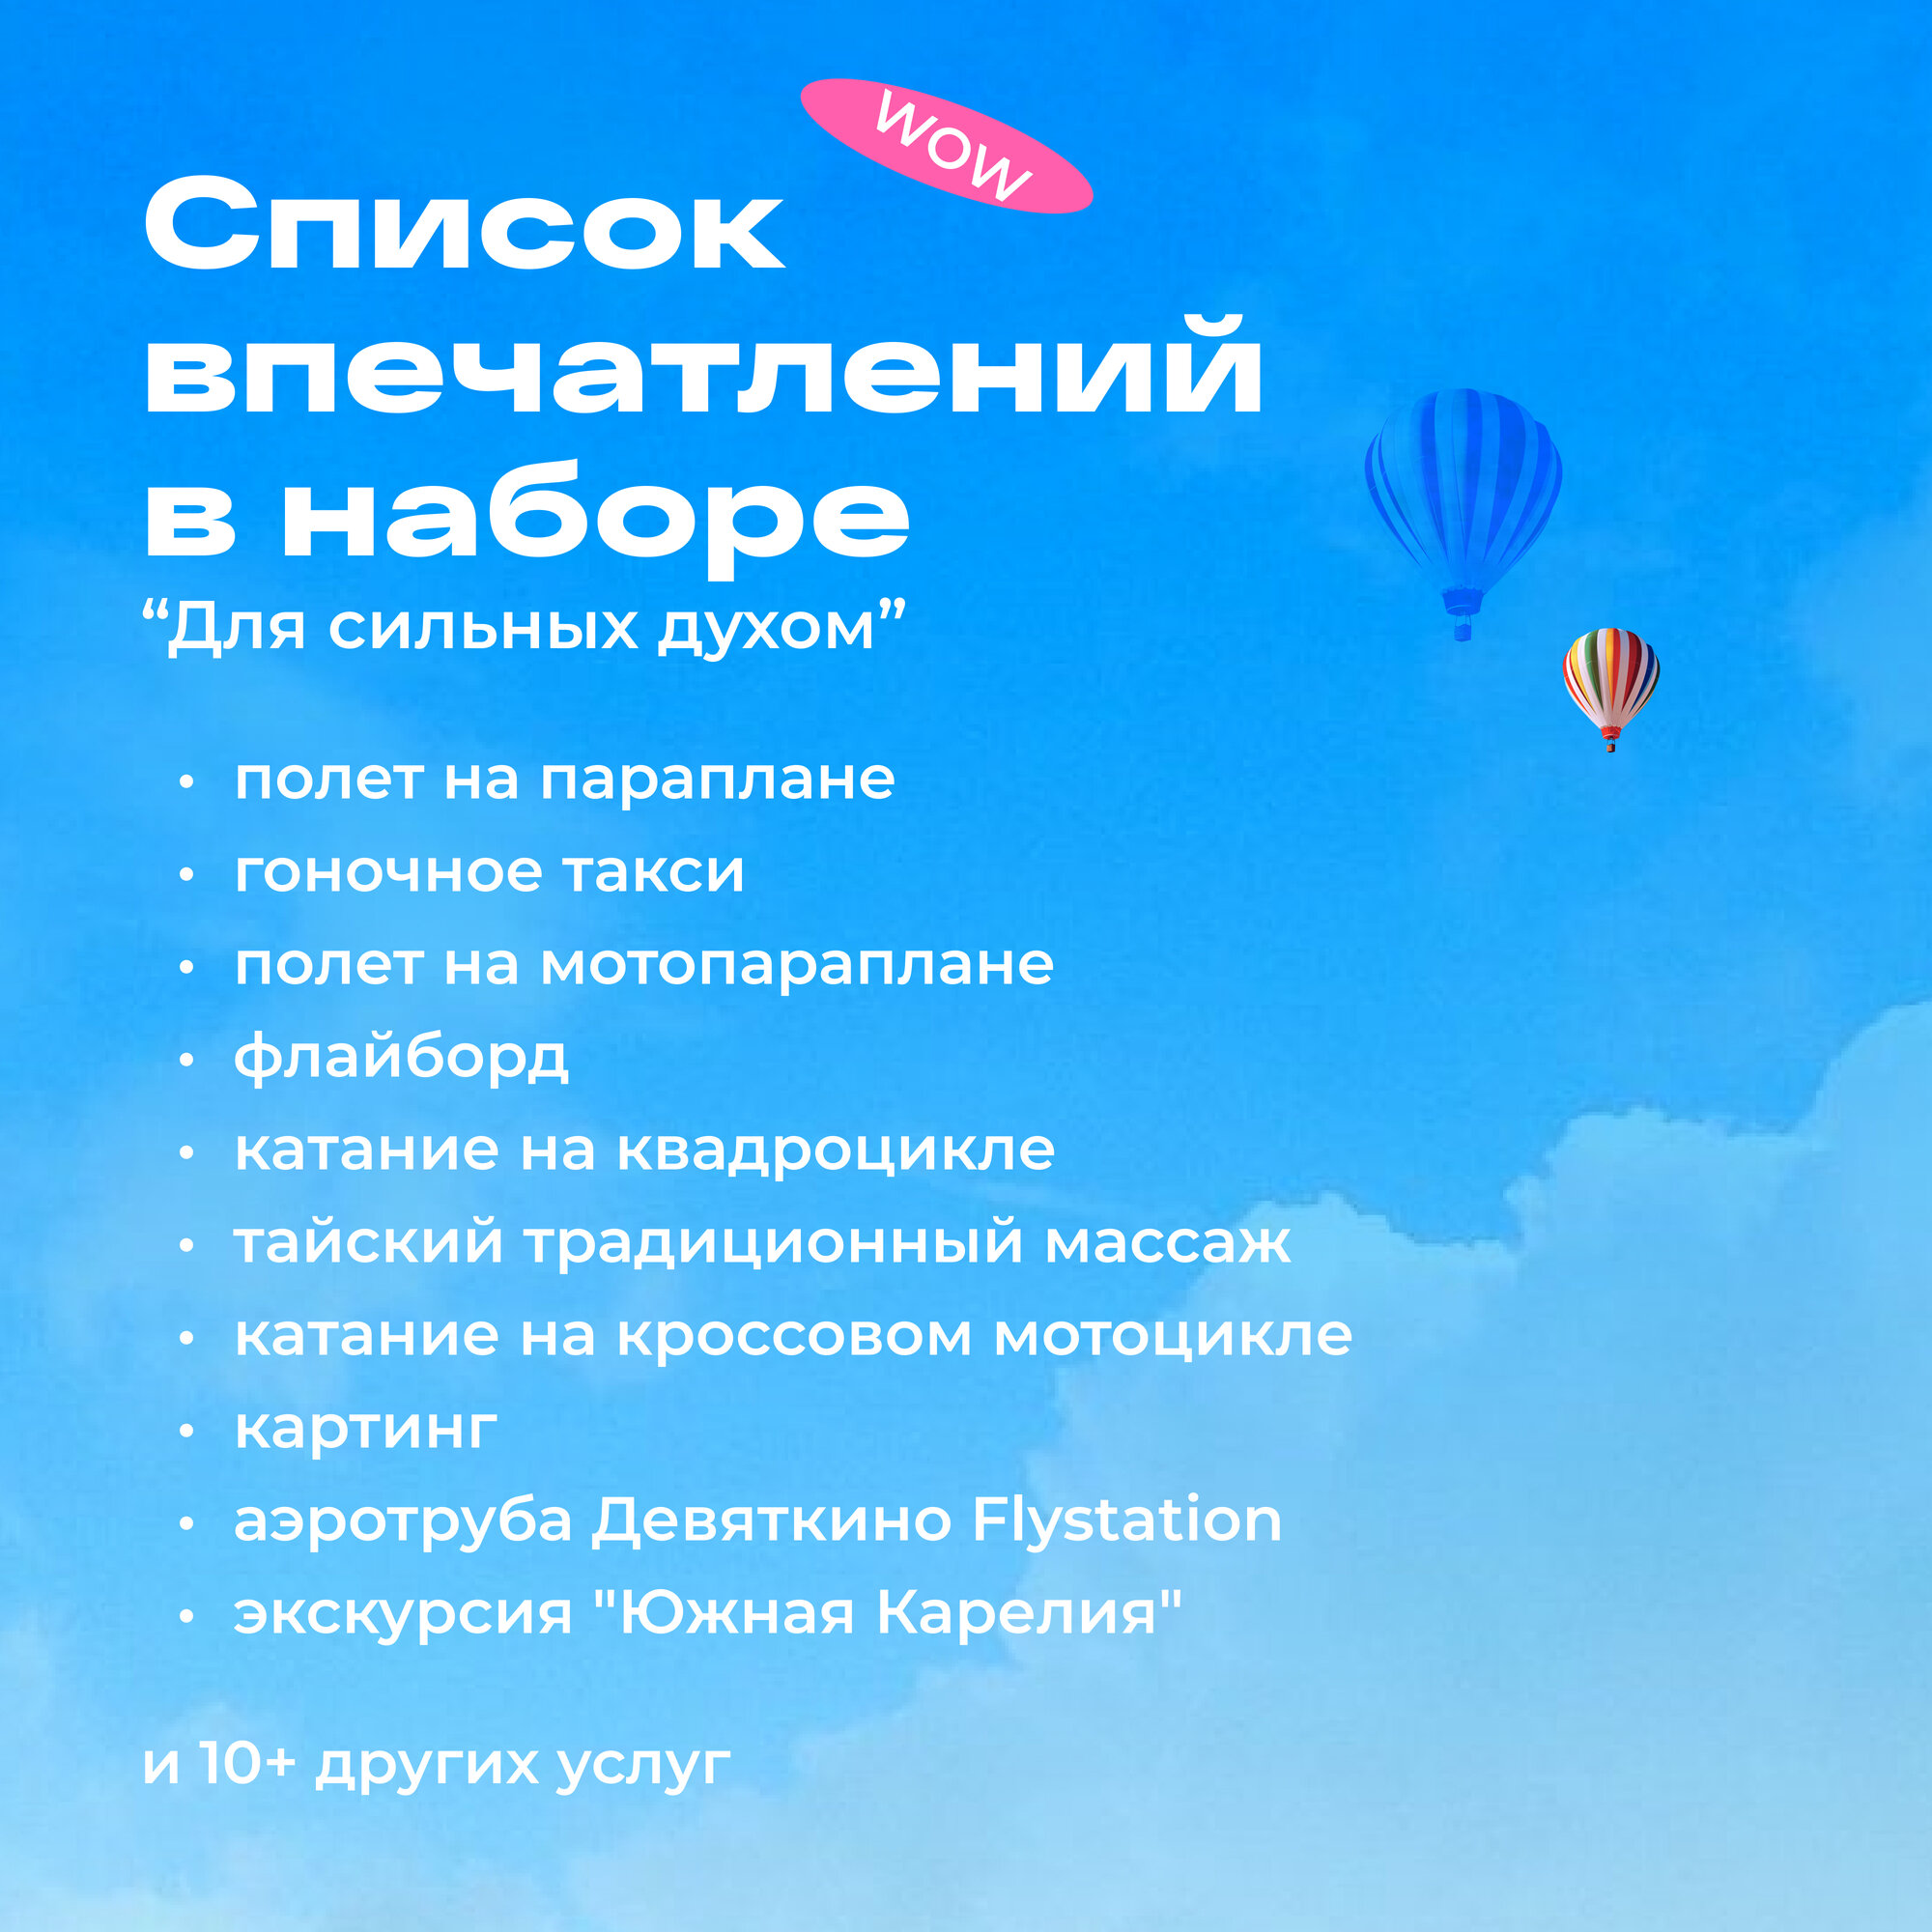 Подарочный сертификат WOWlife "Для сильных духом" - набор из впечатлений на выбор, Санкт-Петербург